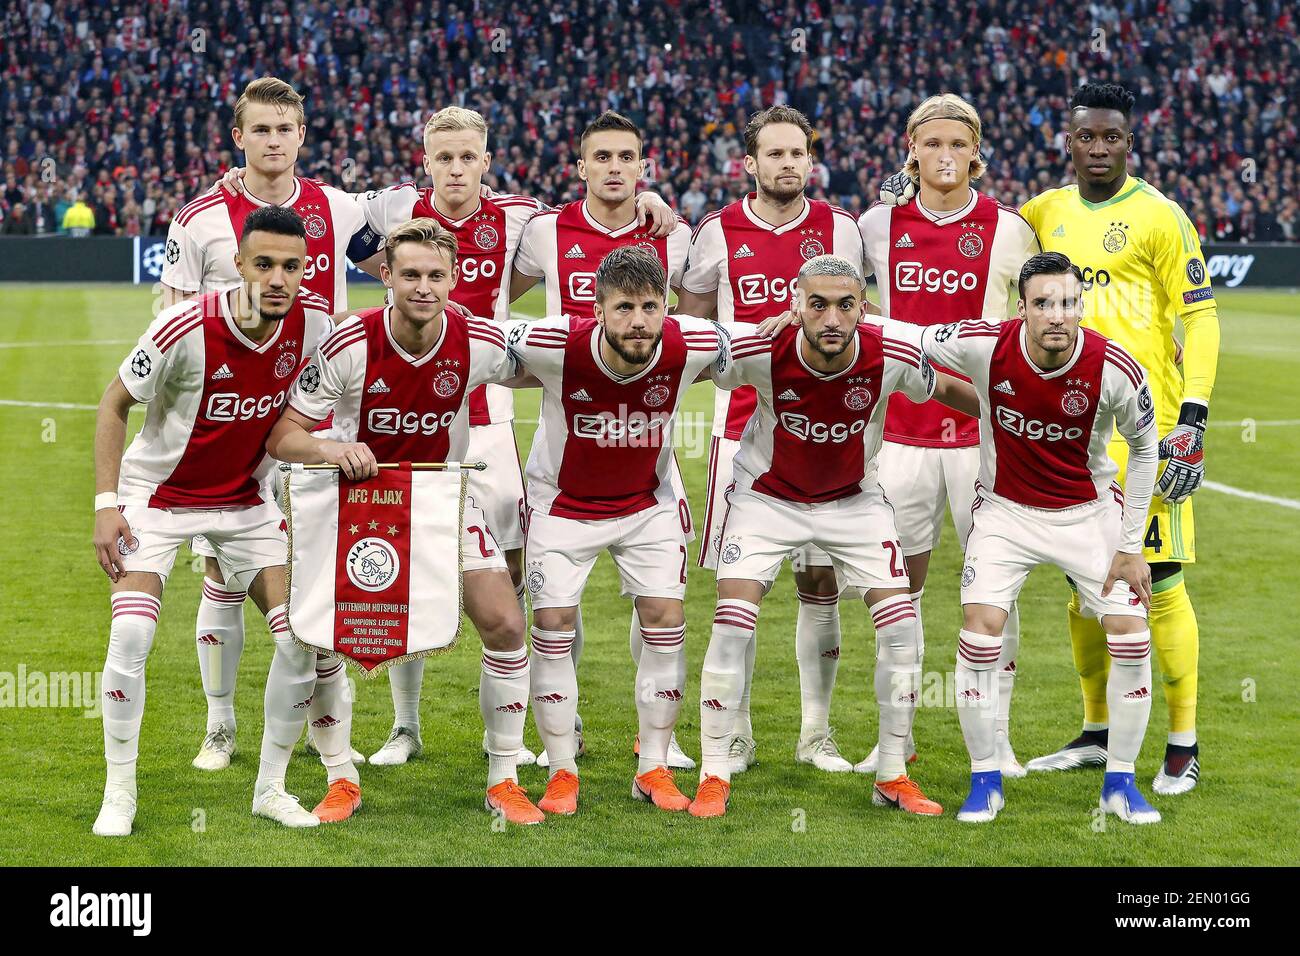 Ajax 2x3Tottenham melhores momentos da Champions league 2018/2019